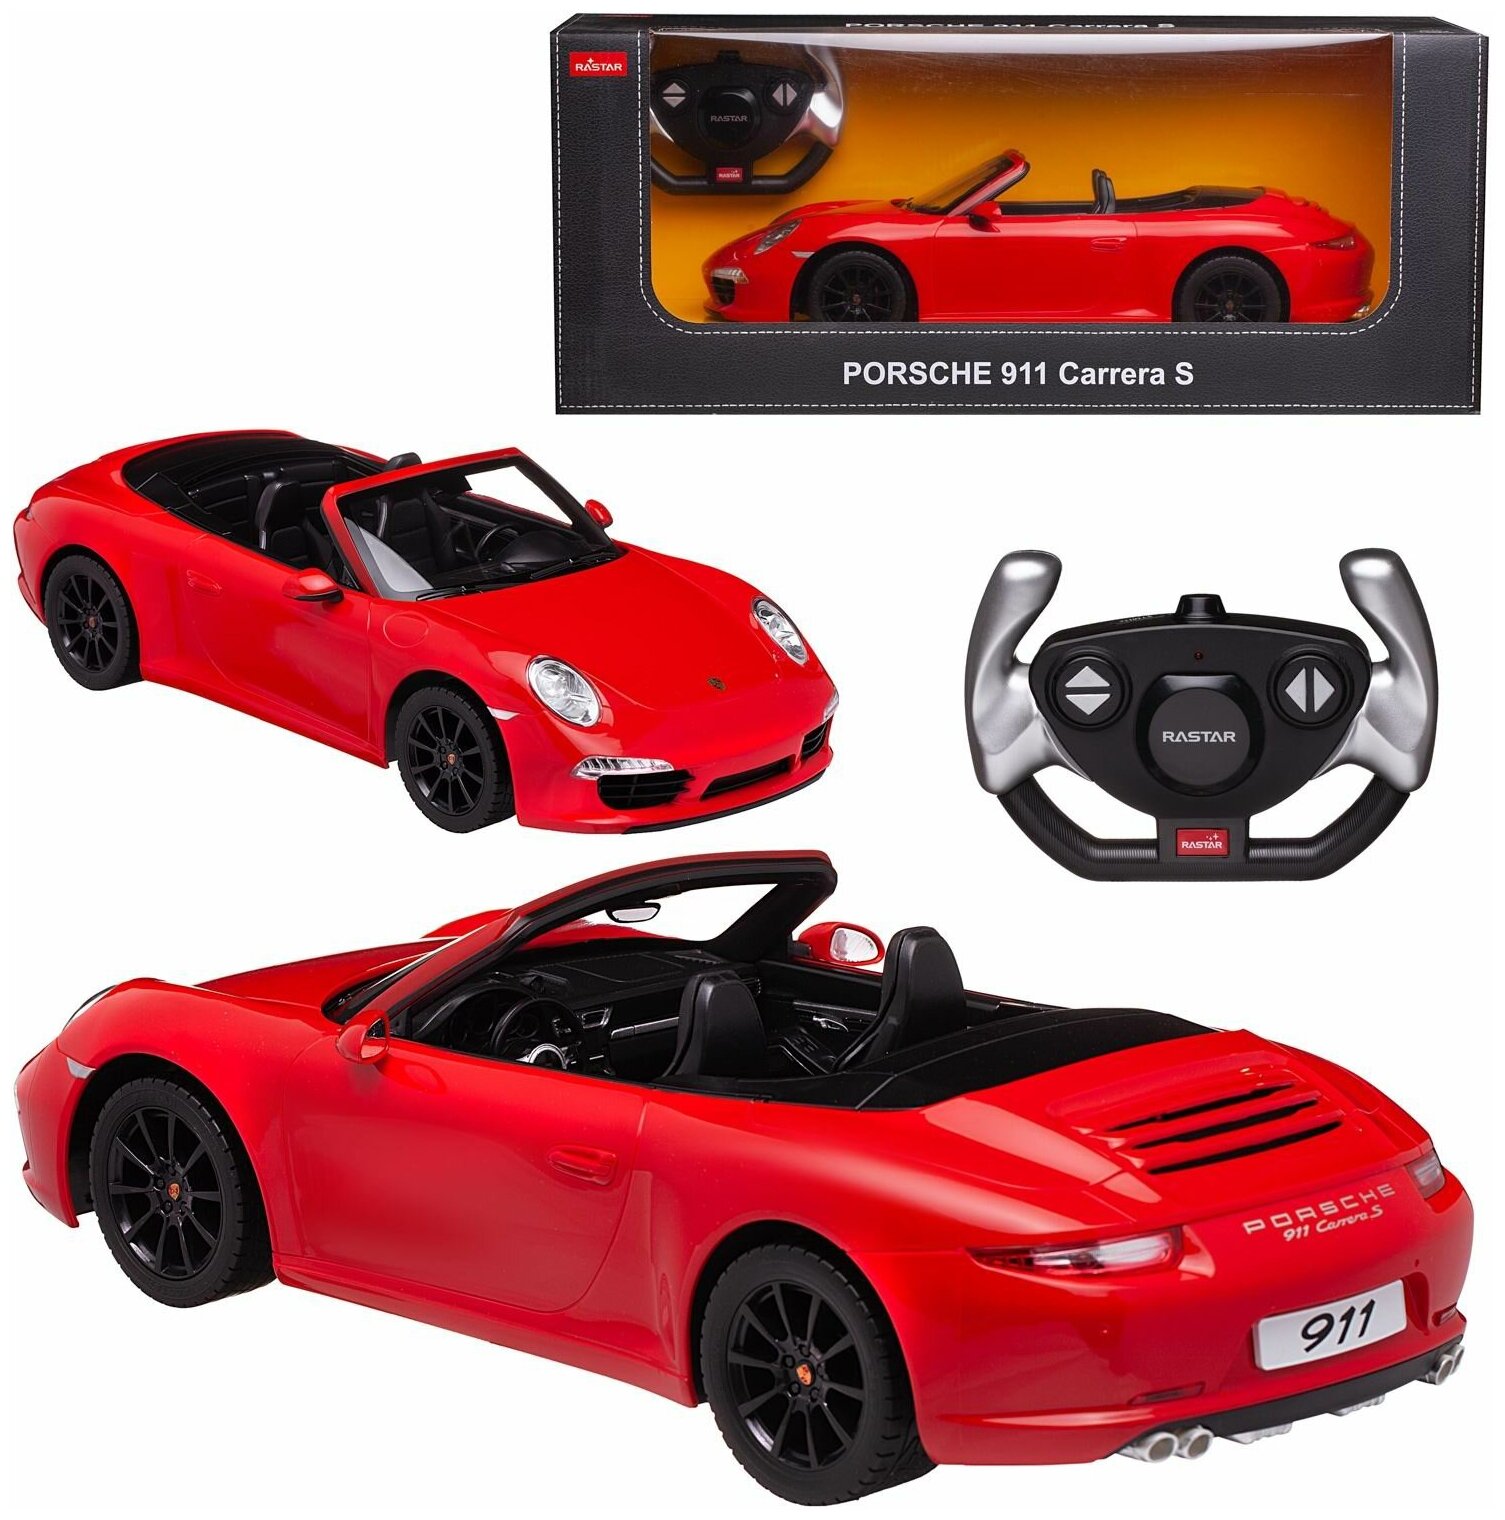 Машина р у 1:12 Porsche 911 Carrera S со световыми эффектами цвет красный 40.3*18.9*10.2см 47700R